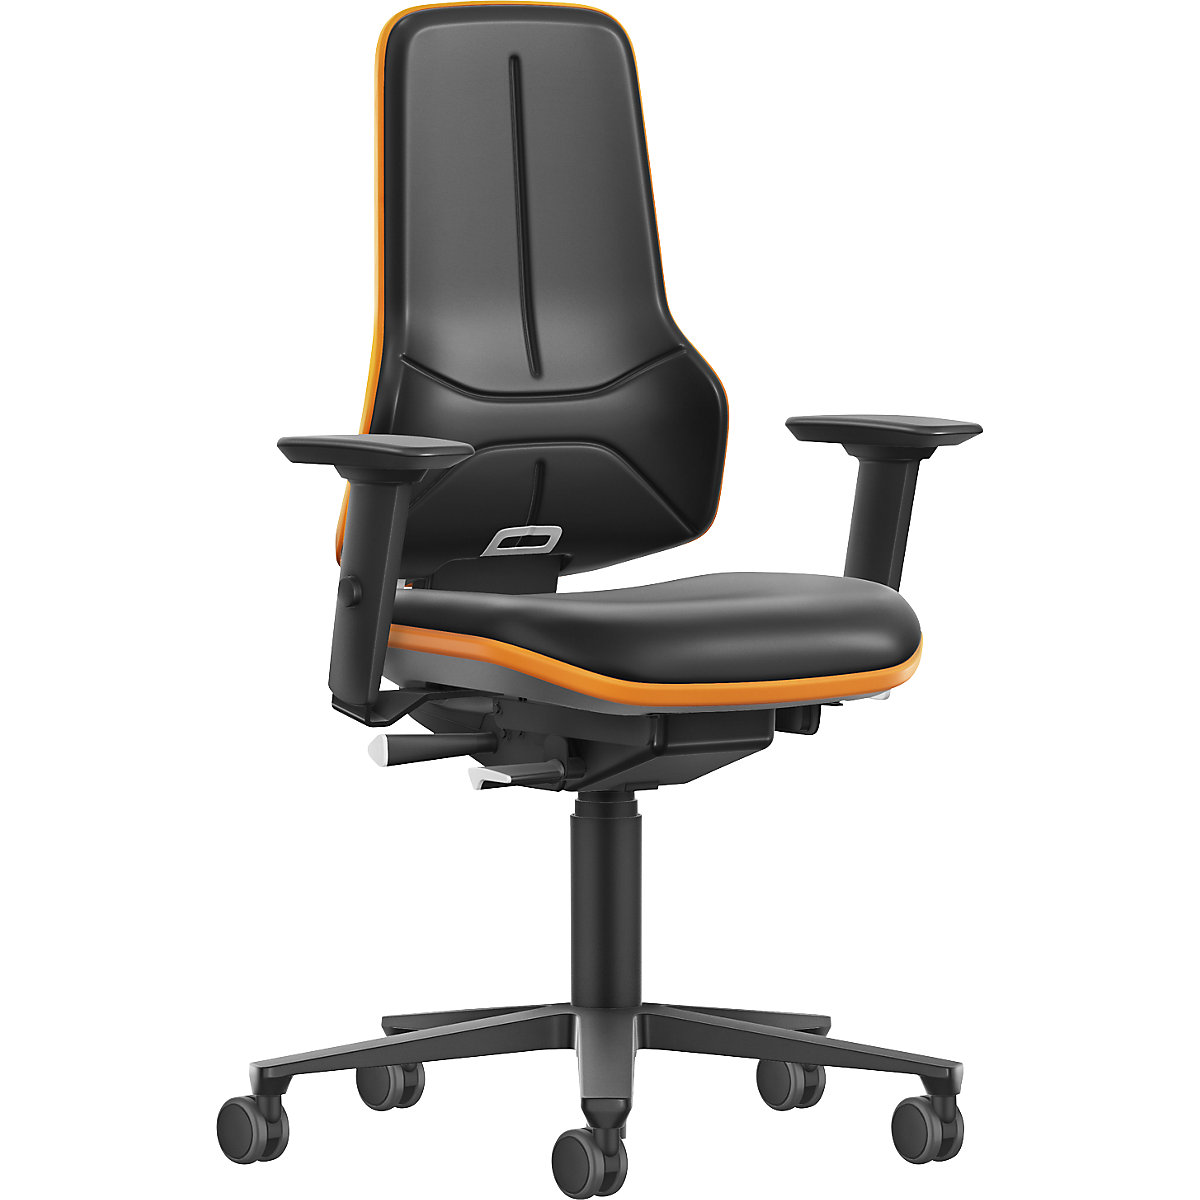 Pracovní otočná židle pro velká zatížení NEON XXL, kolečka – bimos